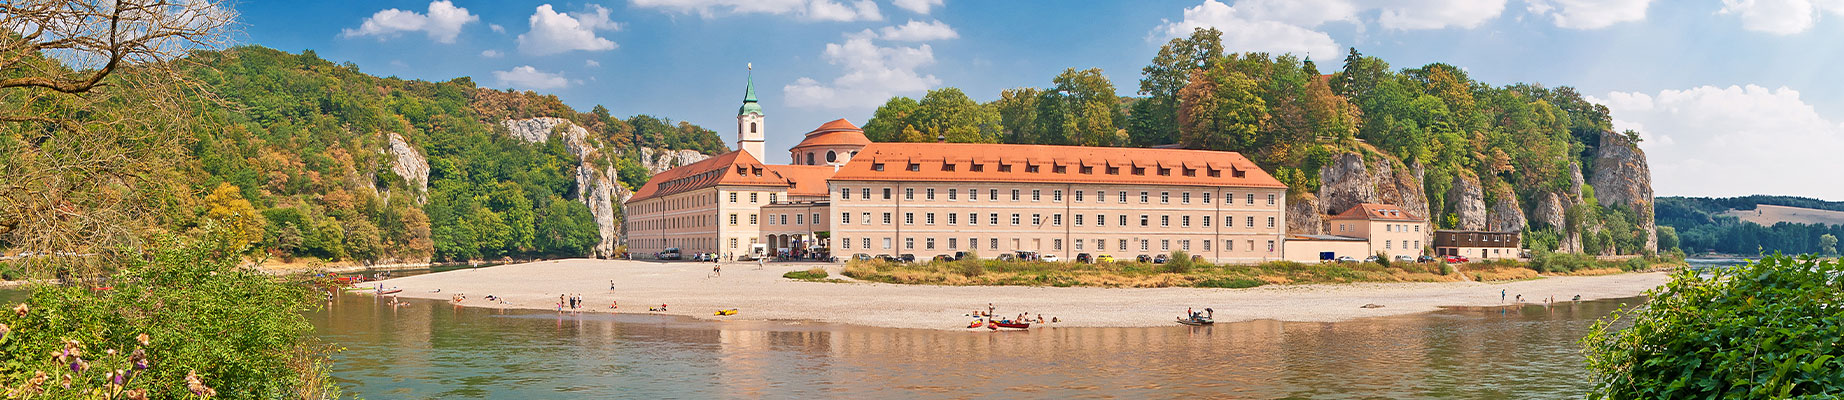 Kloster Weltenburg am deutsche Donau-Radweg